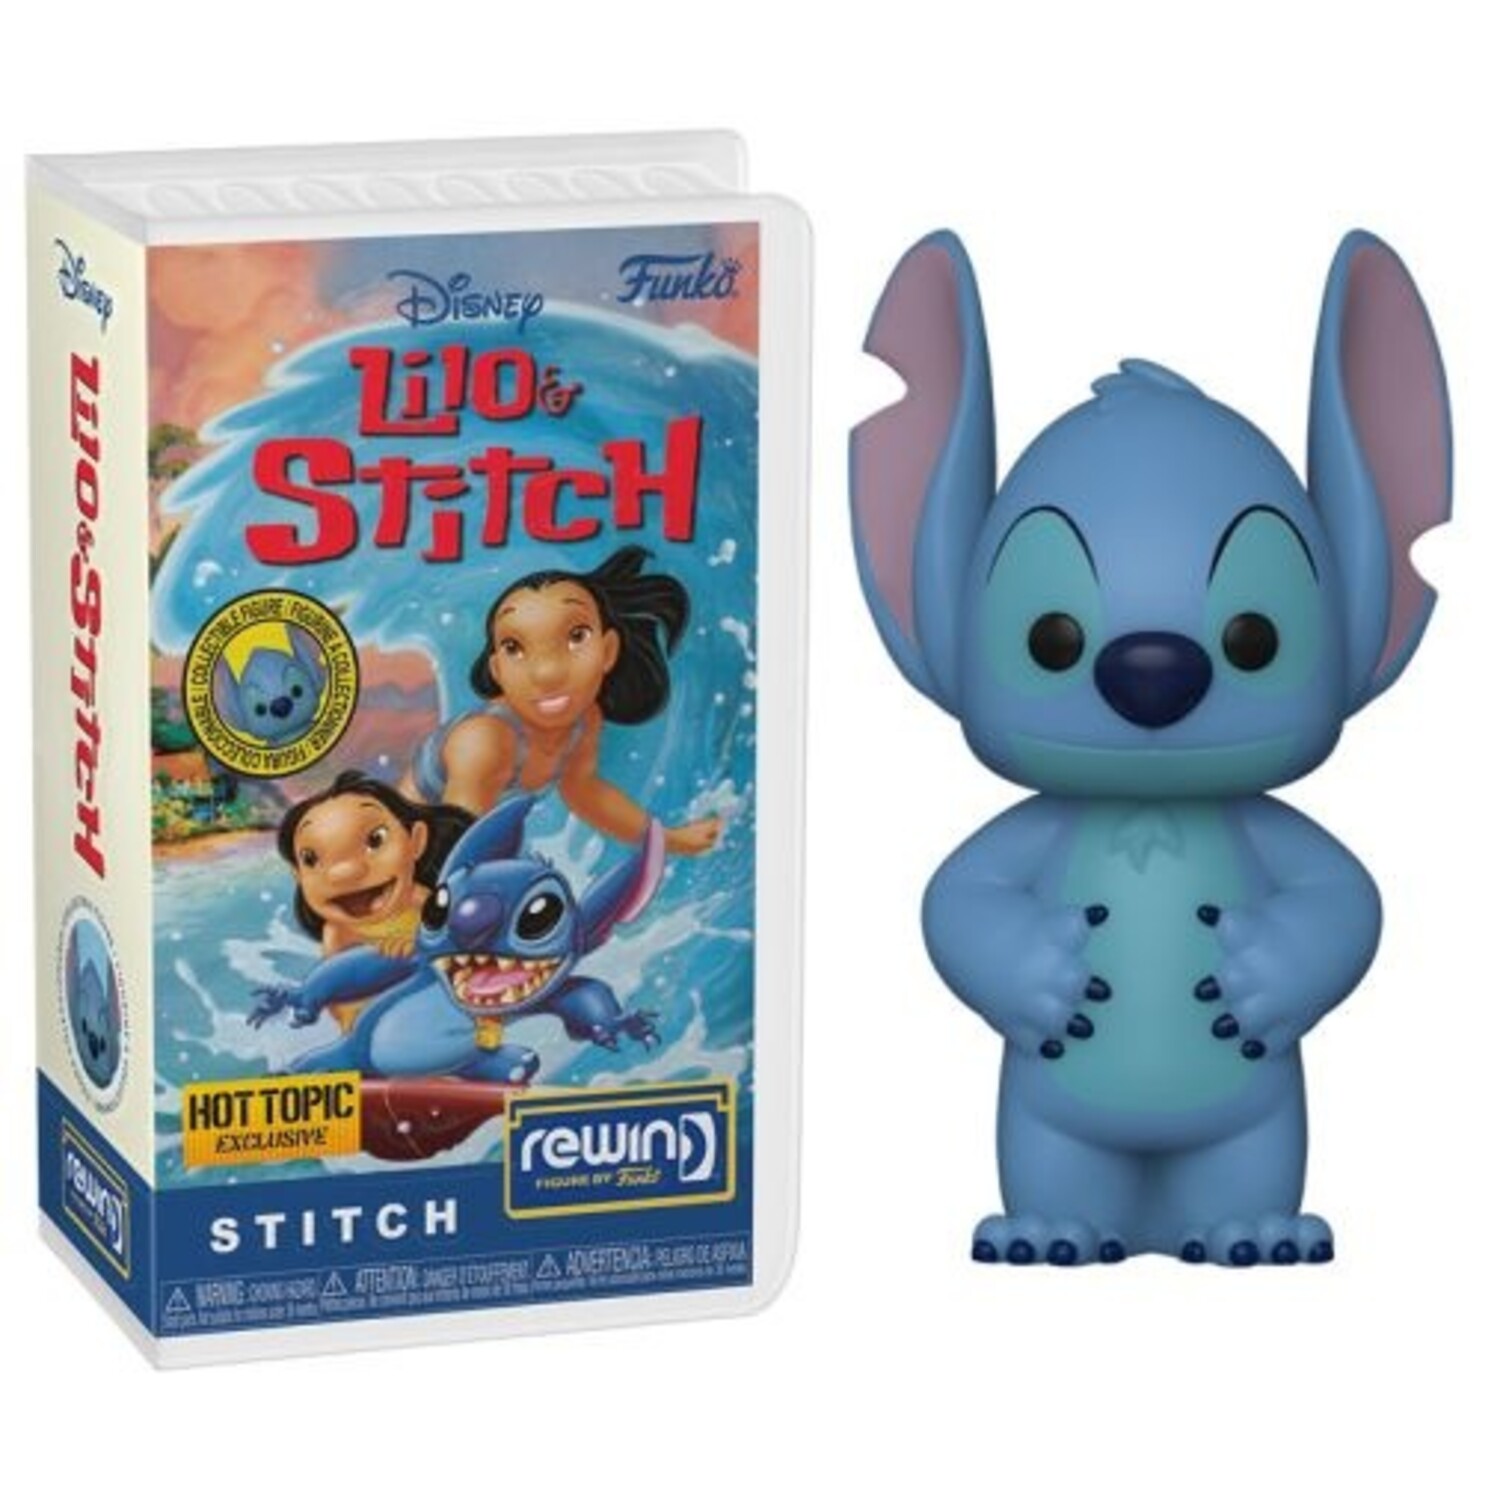 Lilo And Stitch STITCH 626 Vinyl Figurine (7 x 10) by Disney